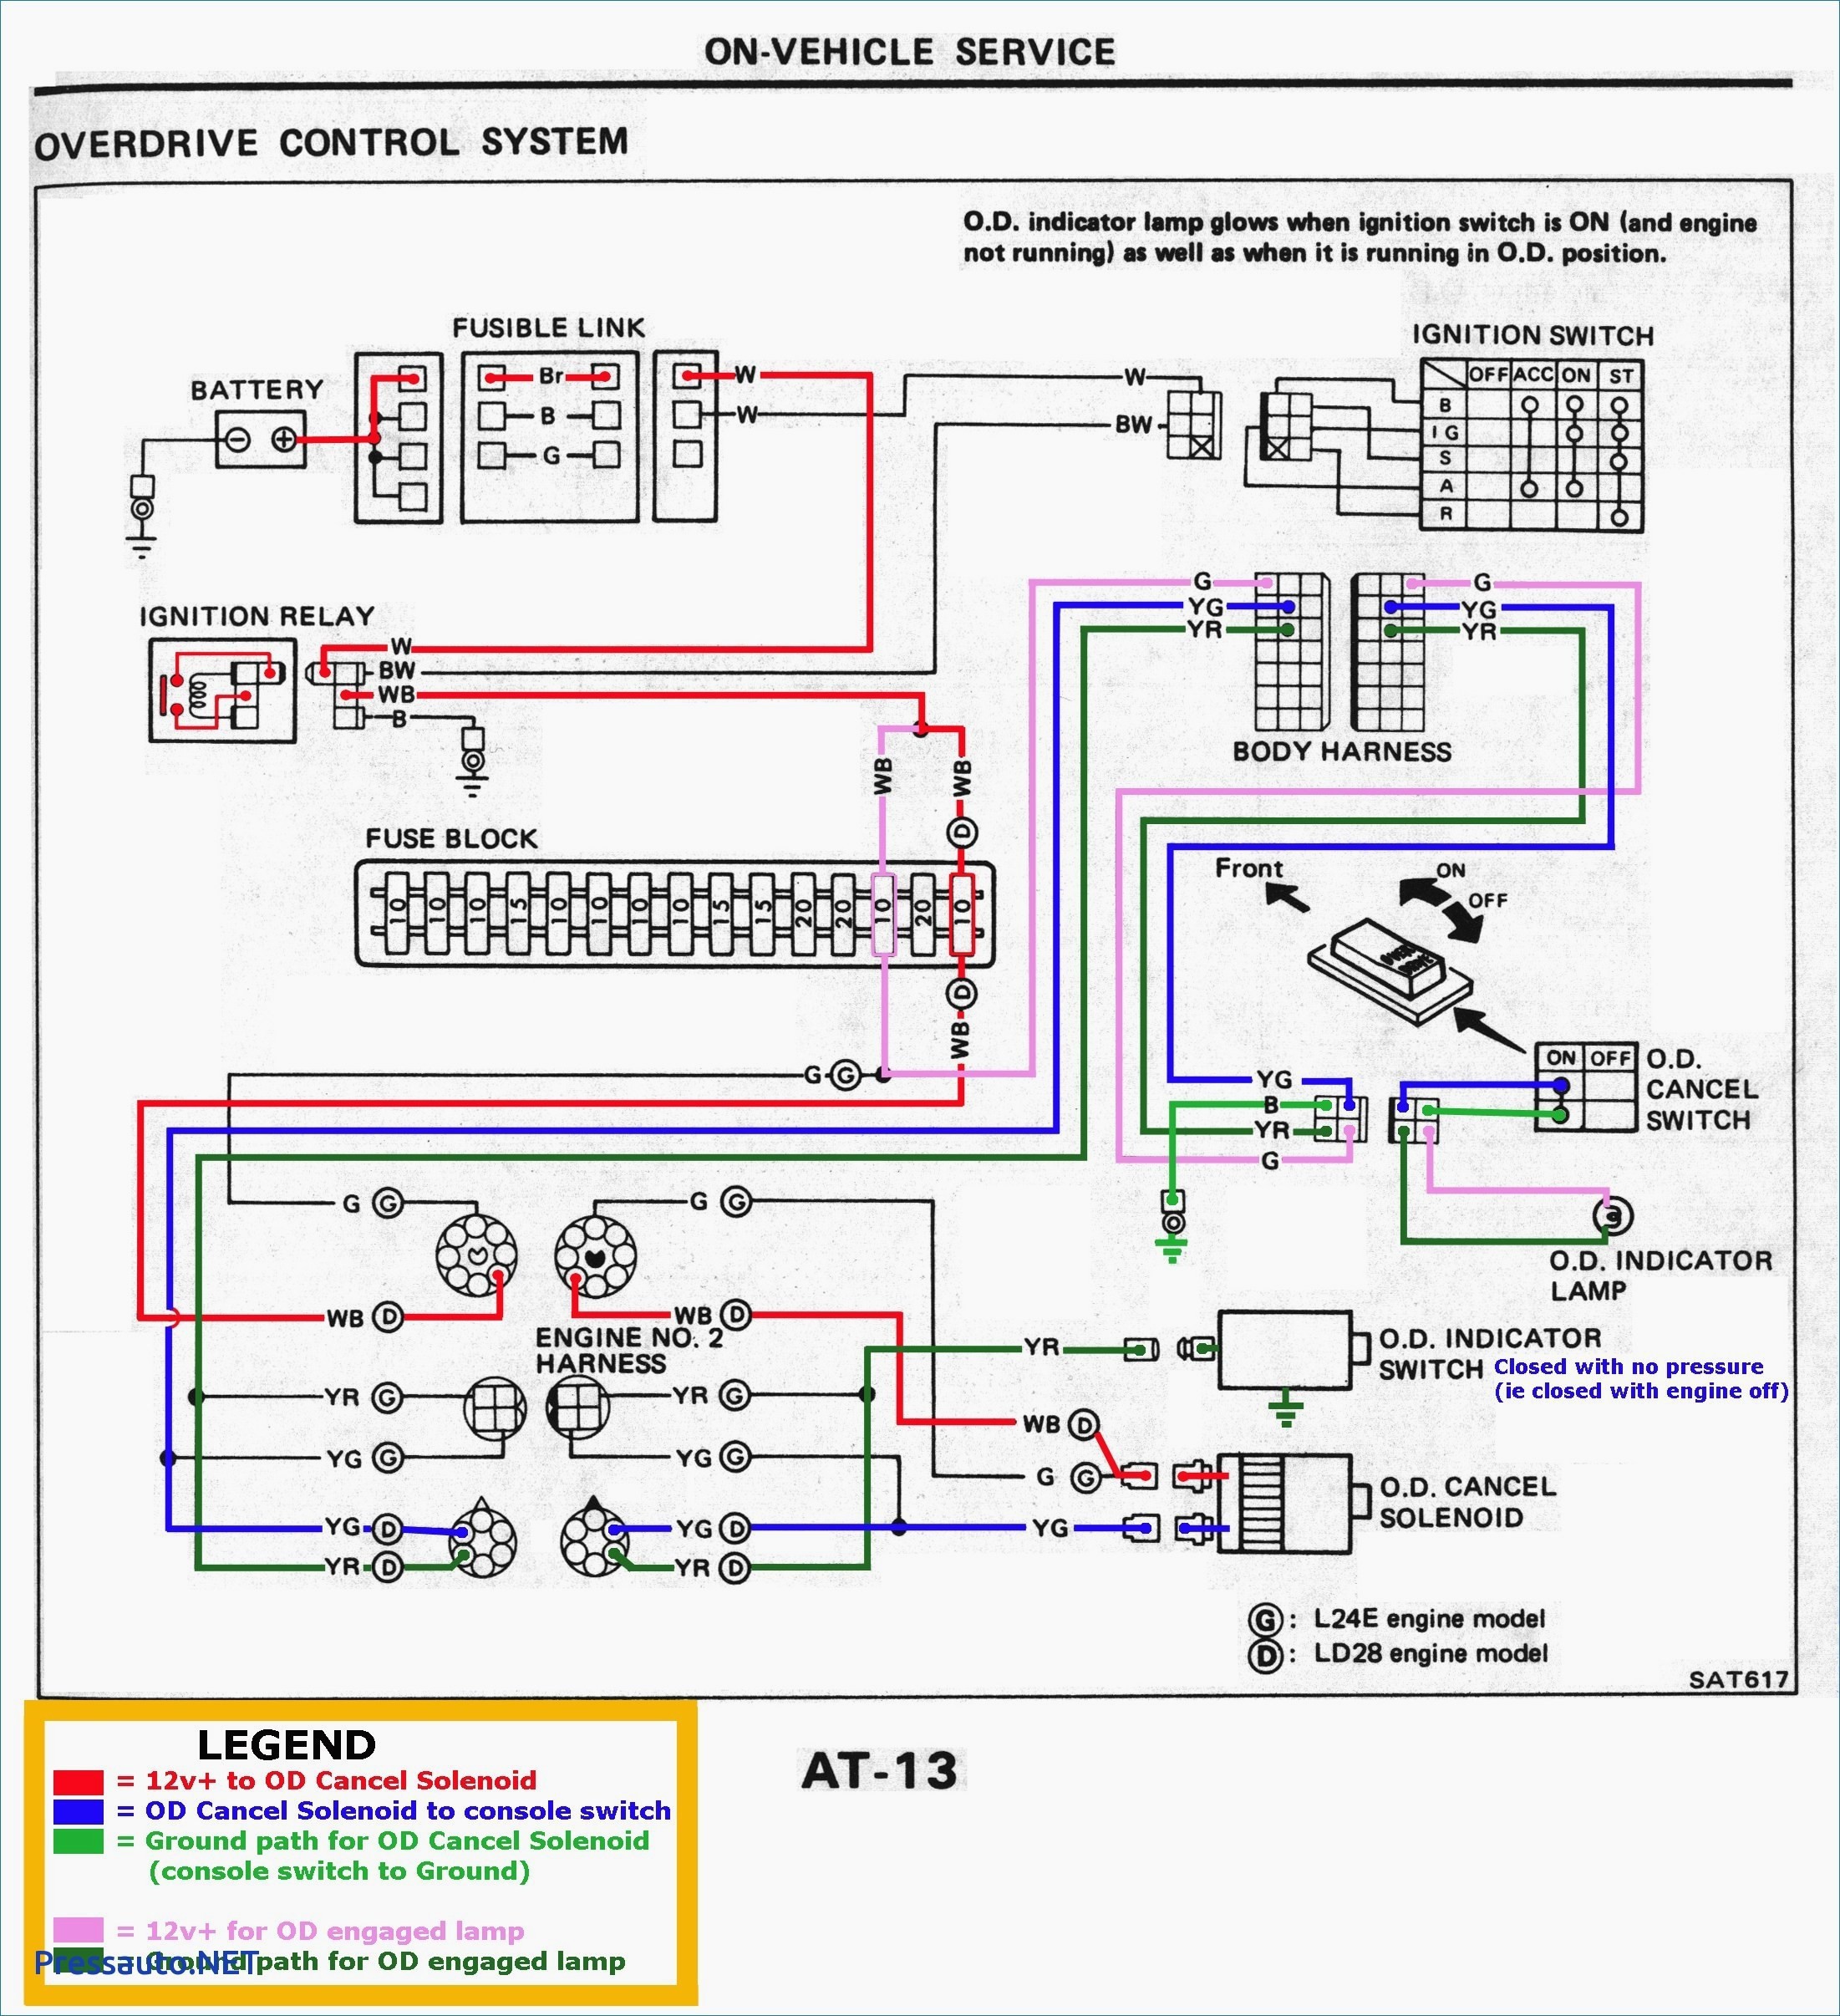 Car sound Wiring Diagram 2001 Kia Sephia Radio Wiring Diagram 2018 Wiring Diagram for Of Car sound Wiring Diagram